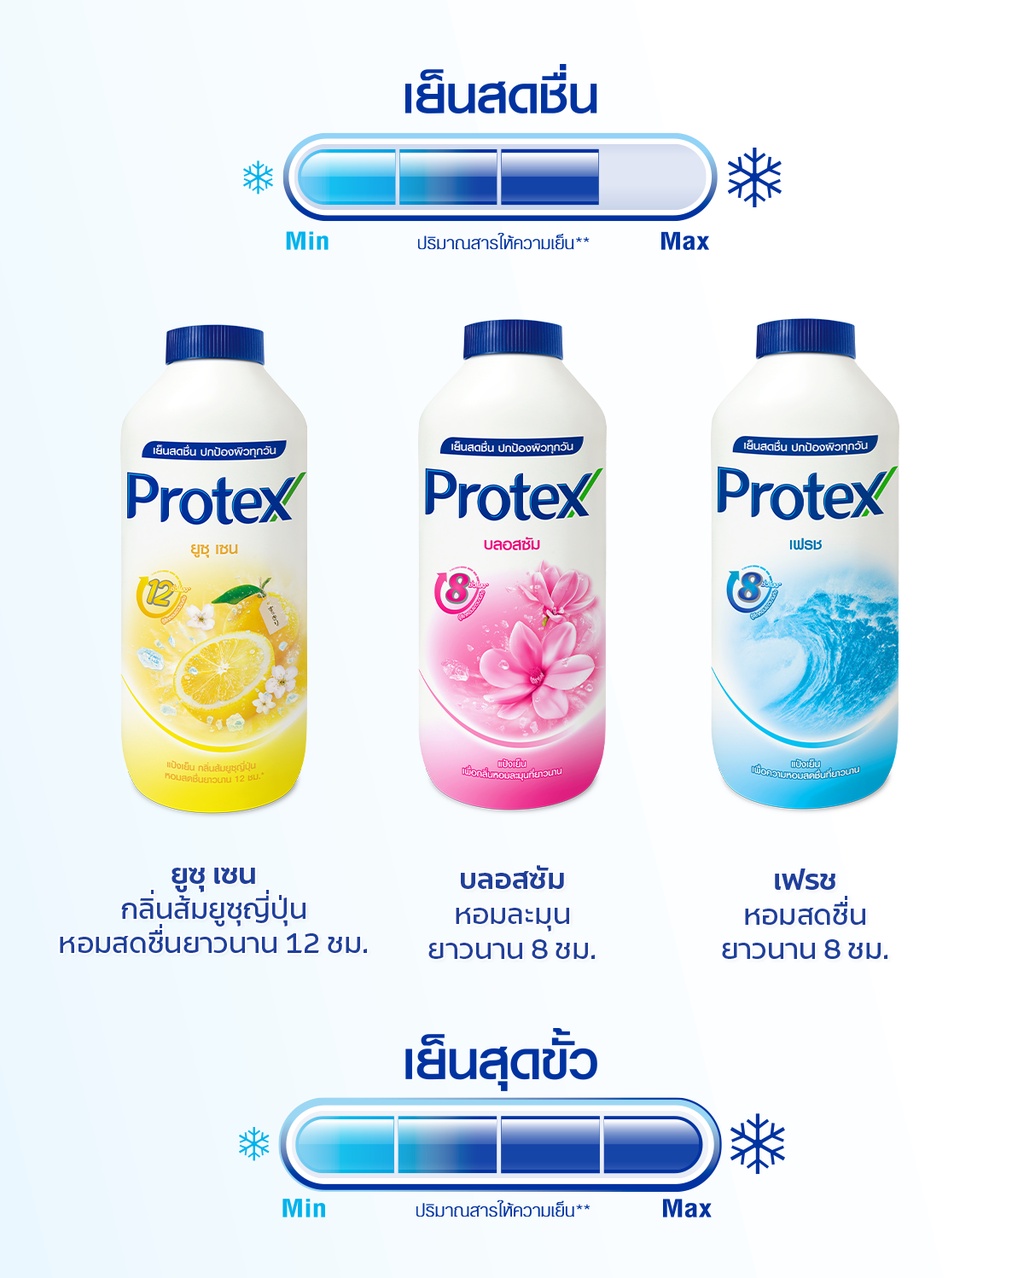 ภาพอธิบายเพิ่มเติมของ Protex โพรเทคส์ บลอสซั่ม 280 ก. รวม 2 ขวด ช่วยให้รู้สึกเย็นสดชื่น (แป้งเย็น) Protex Talcum Powder Blossom 280g total 2 bottles